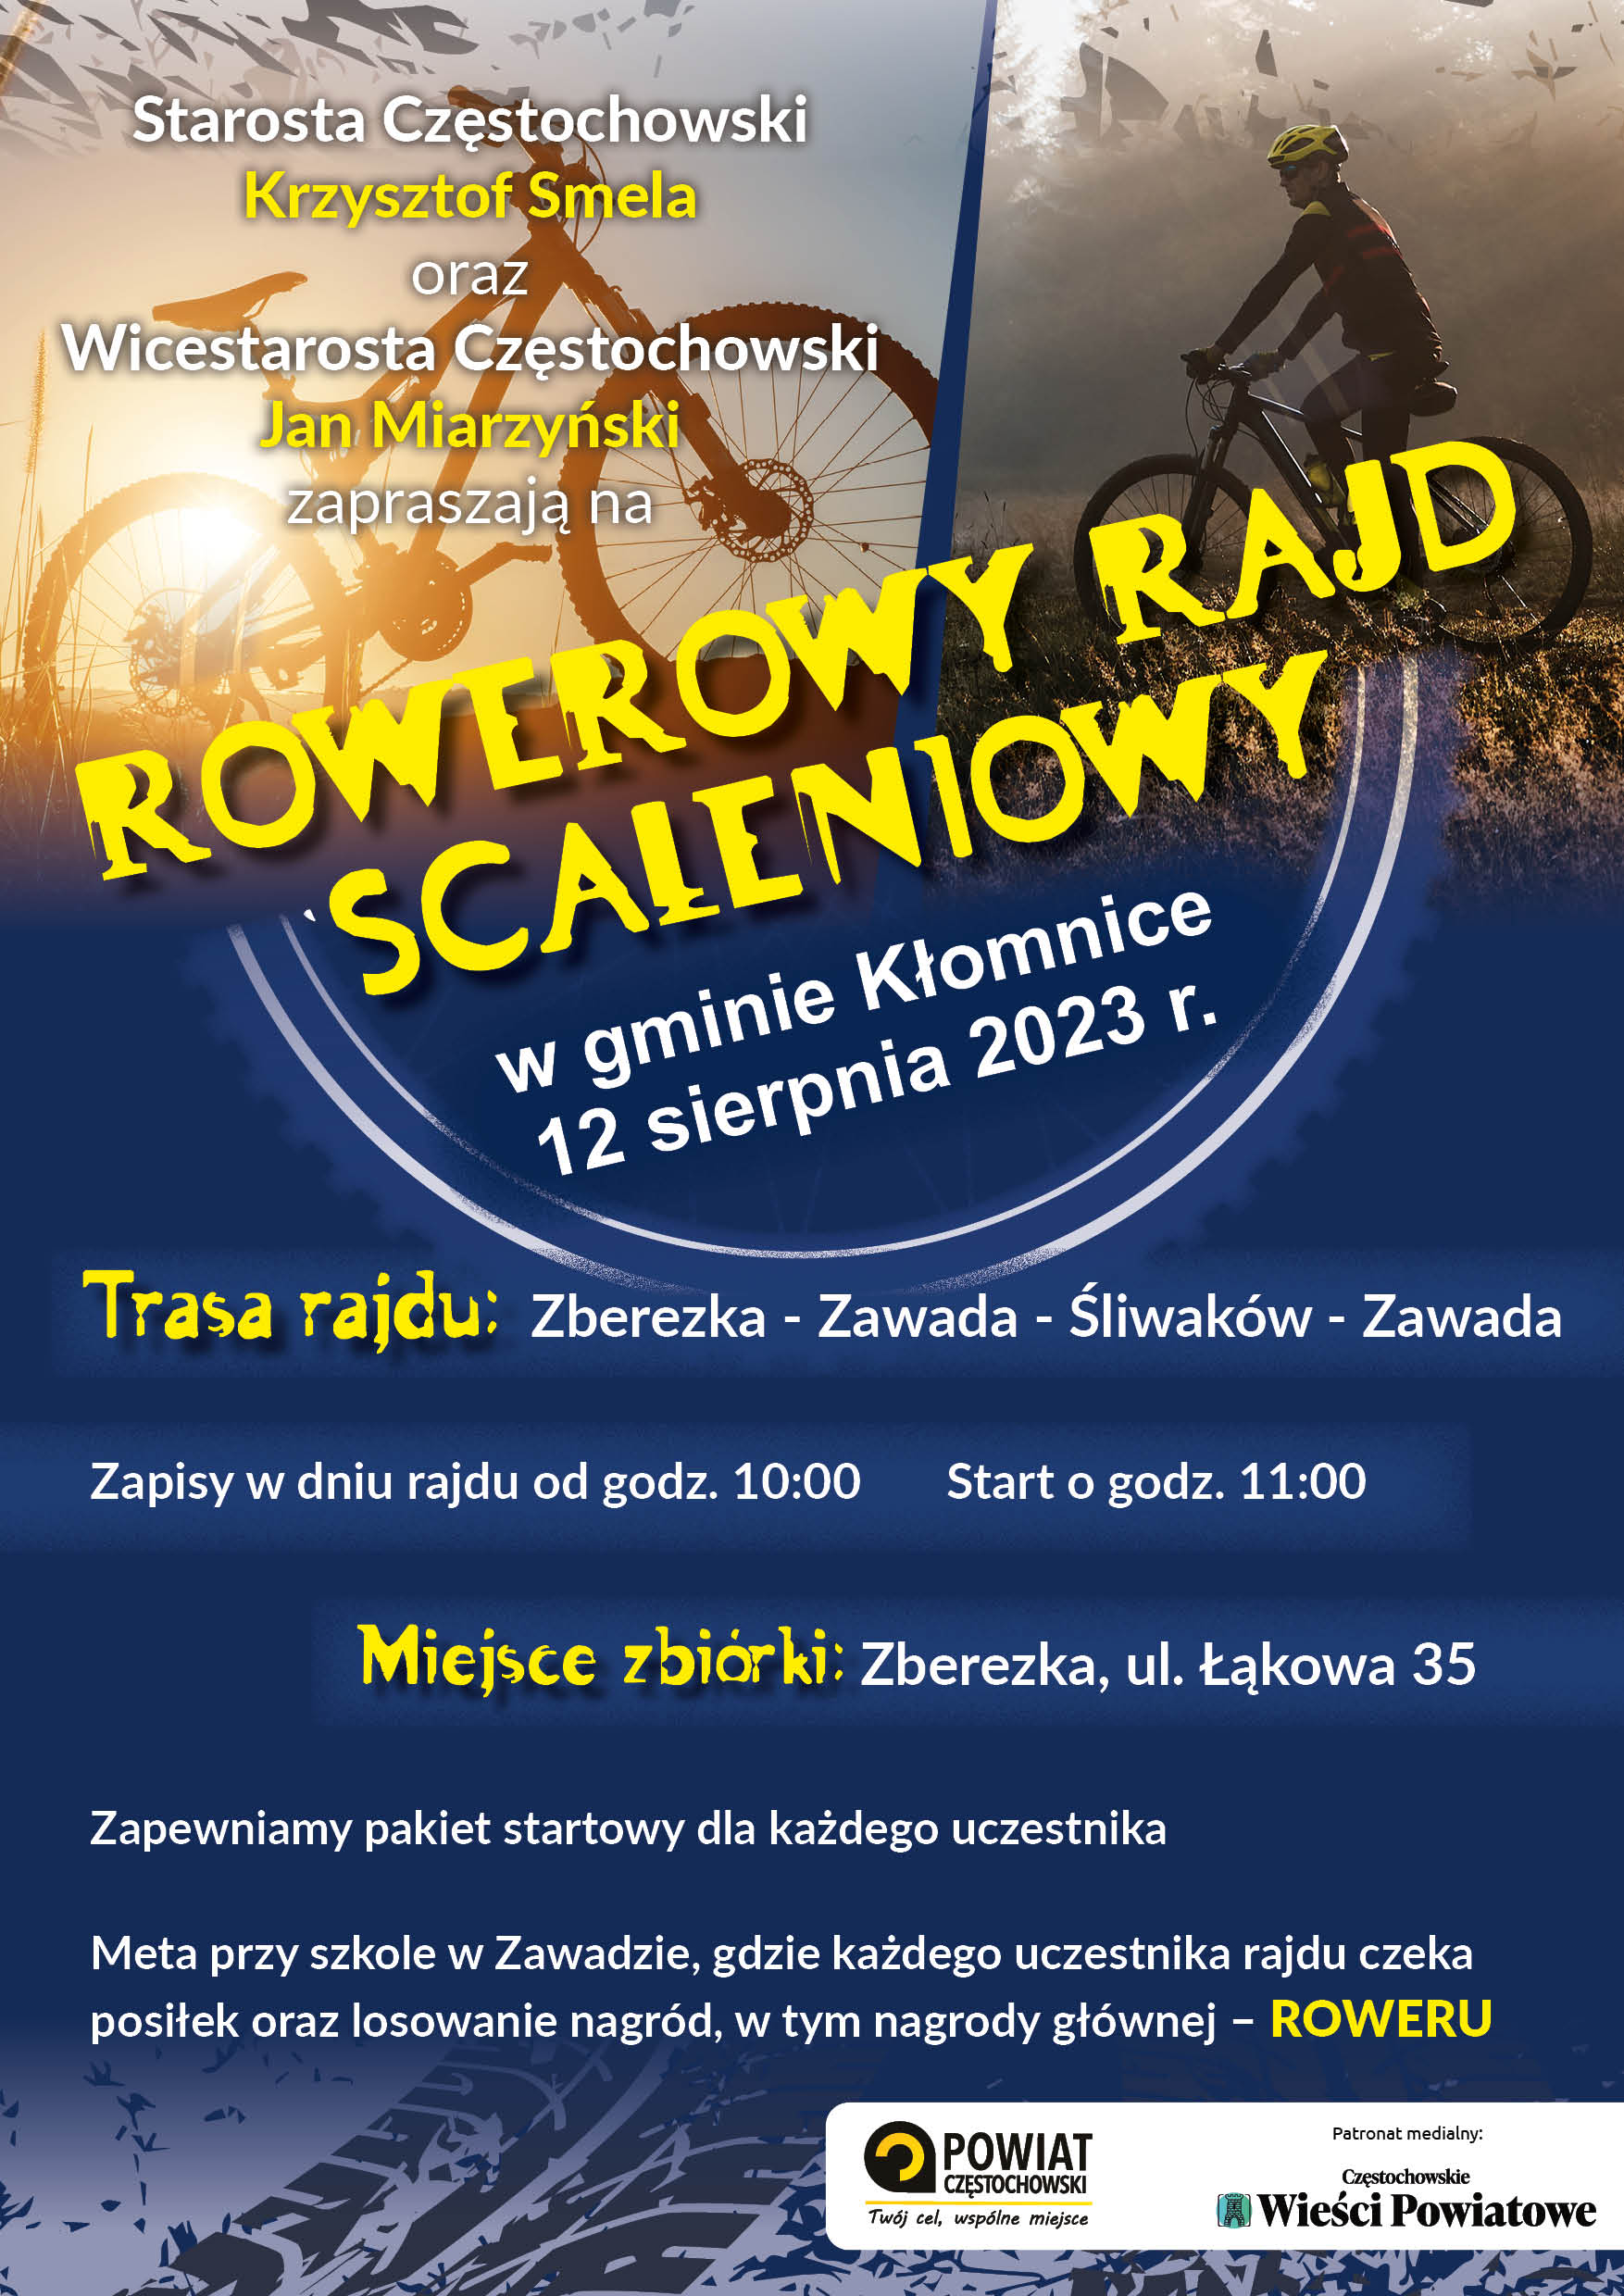 Rowerowy Rajd Scaleniowy - Zberezka ul. Łąkowa 35, zaspisy 12.08 od 10:00, start godz. 11:00